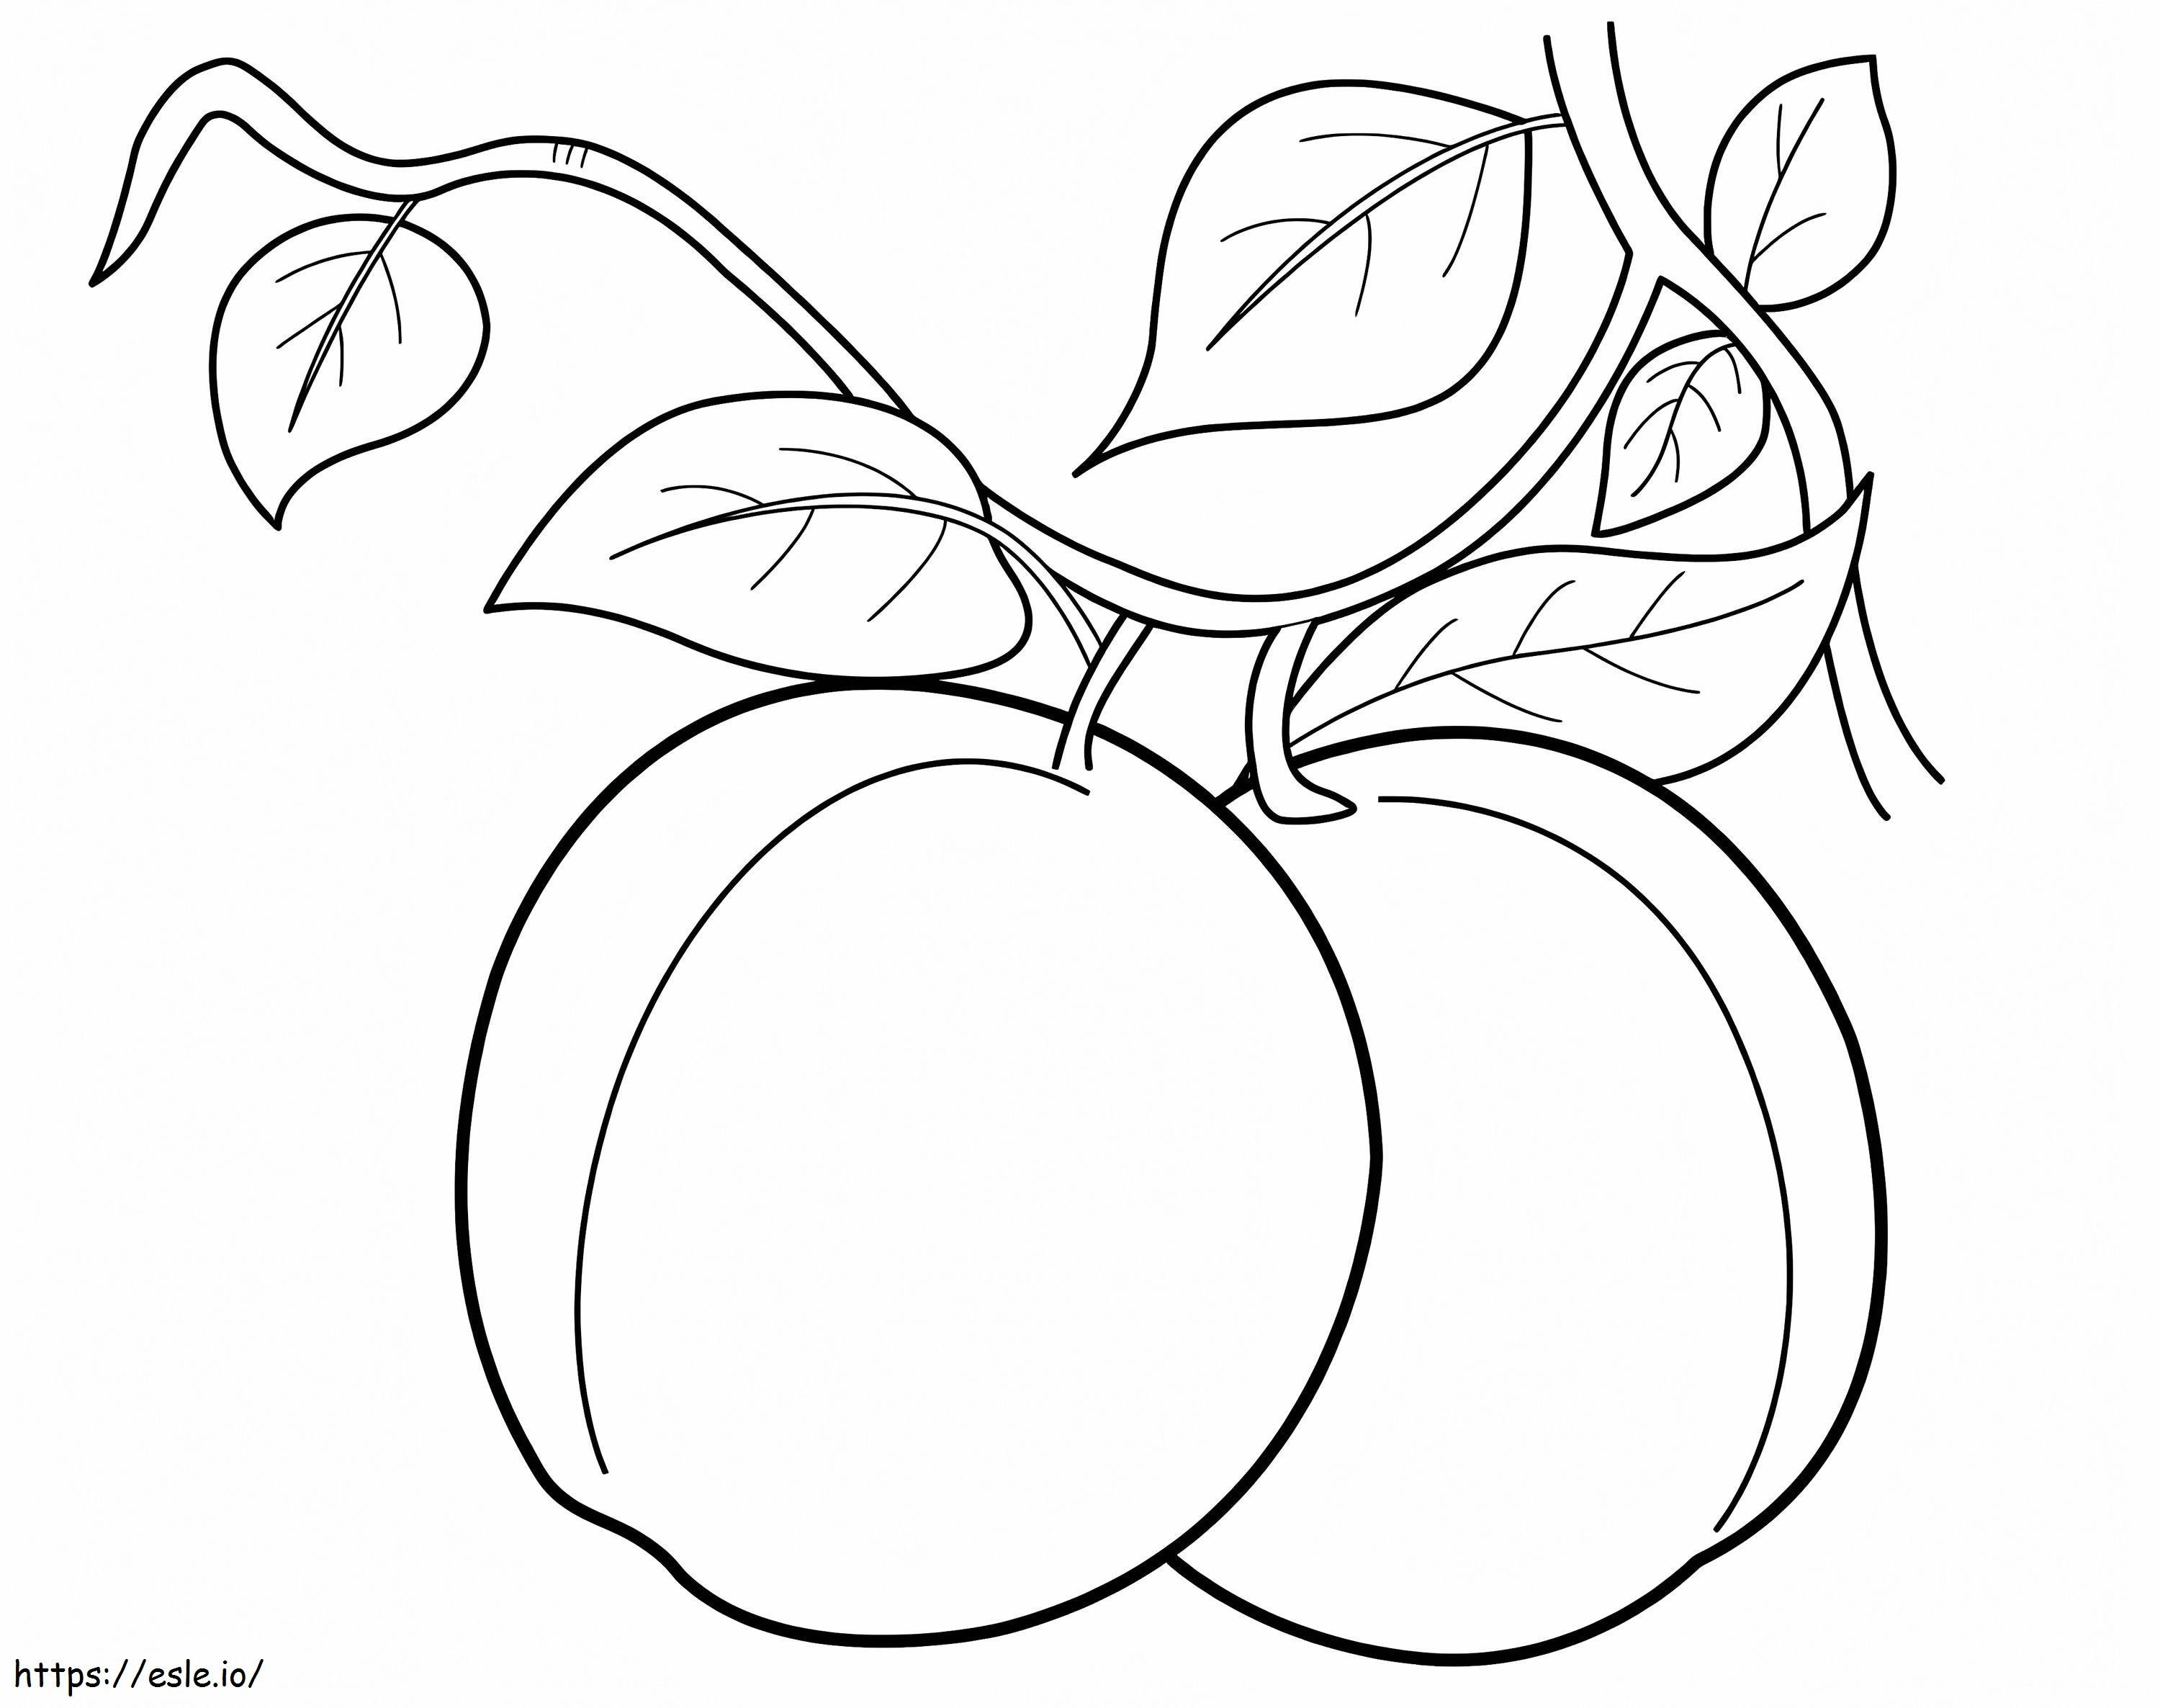 Zwei Pfirsiche ausmalbilder